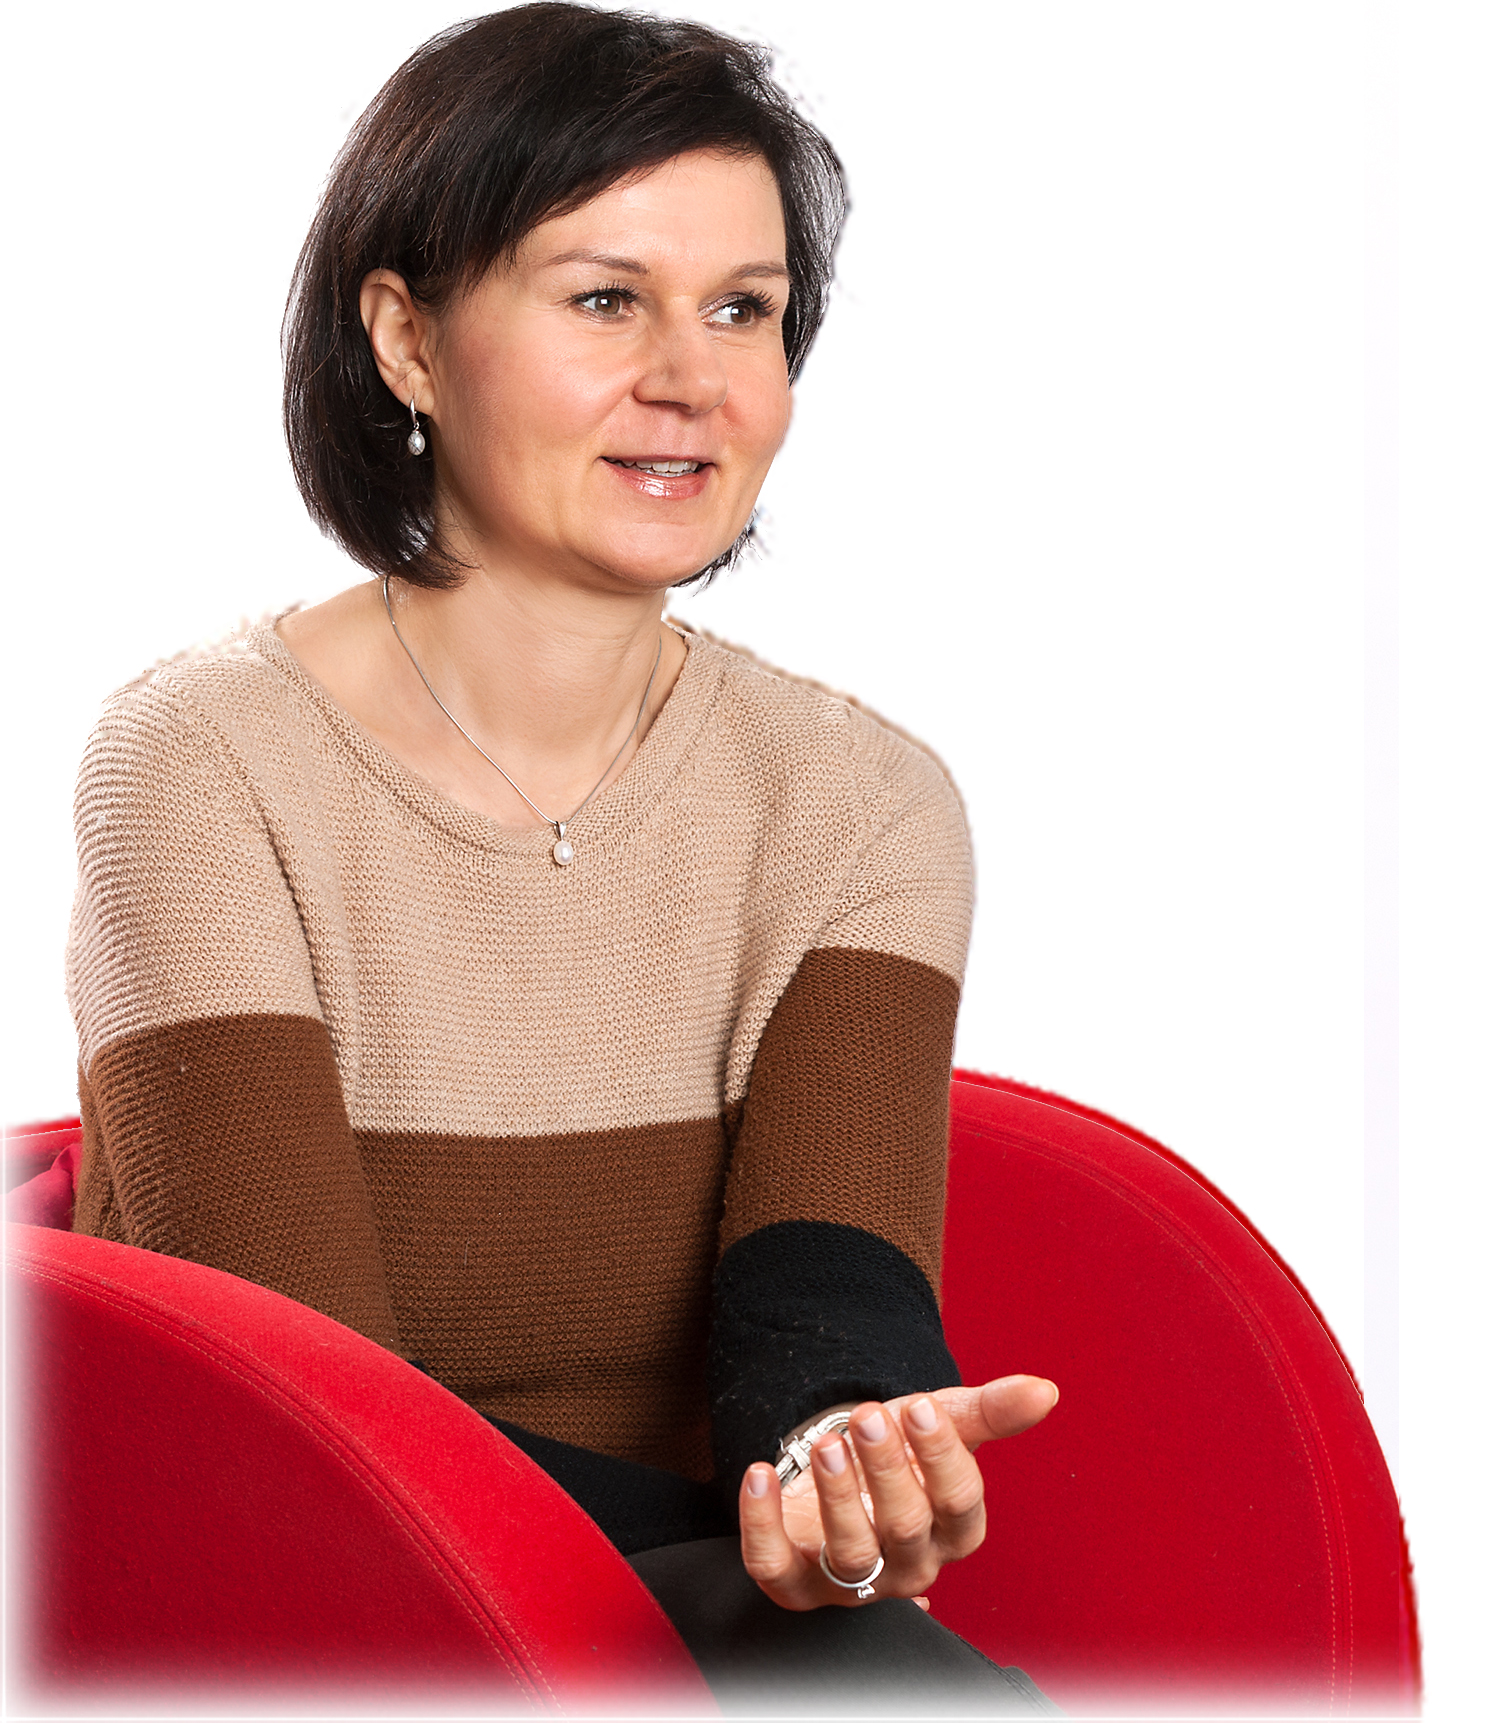 Psychotherapeutin in Psychotherapie Praxis in München: Diplom-Psychologin Barbara Diertl